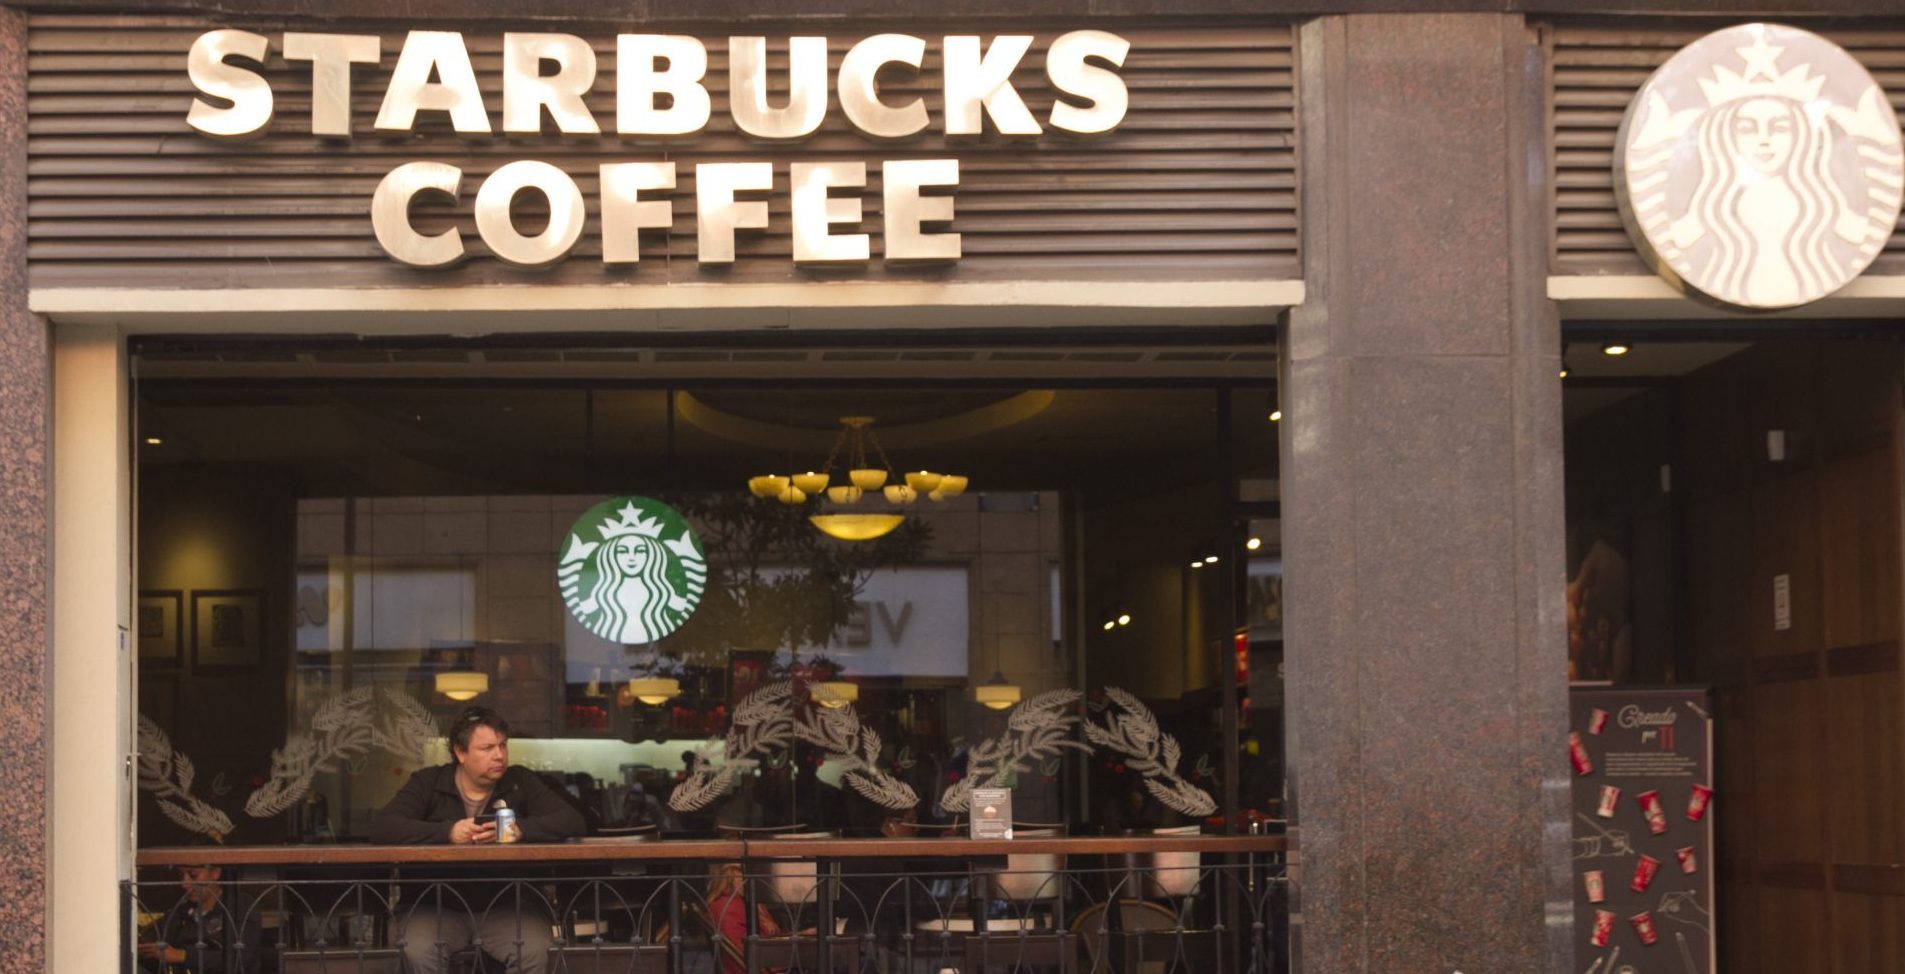 Alsea, dueña de Starbucks, recorta empleos en México por COVID-19